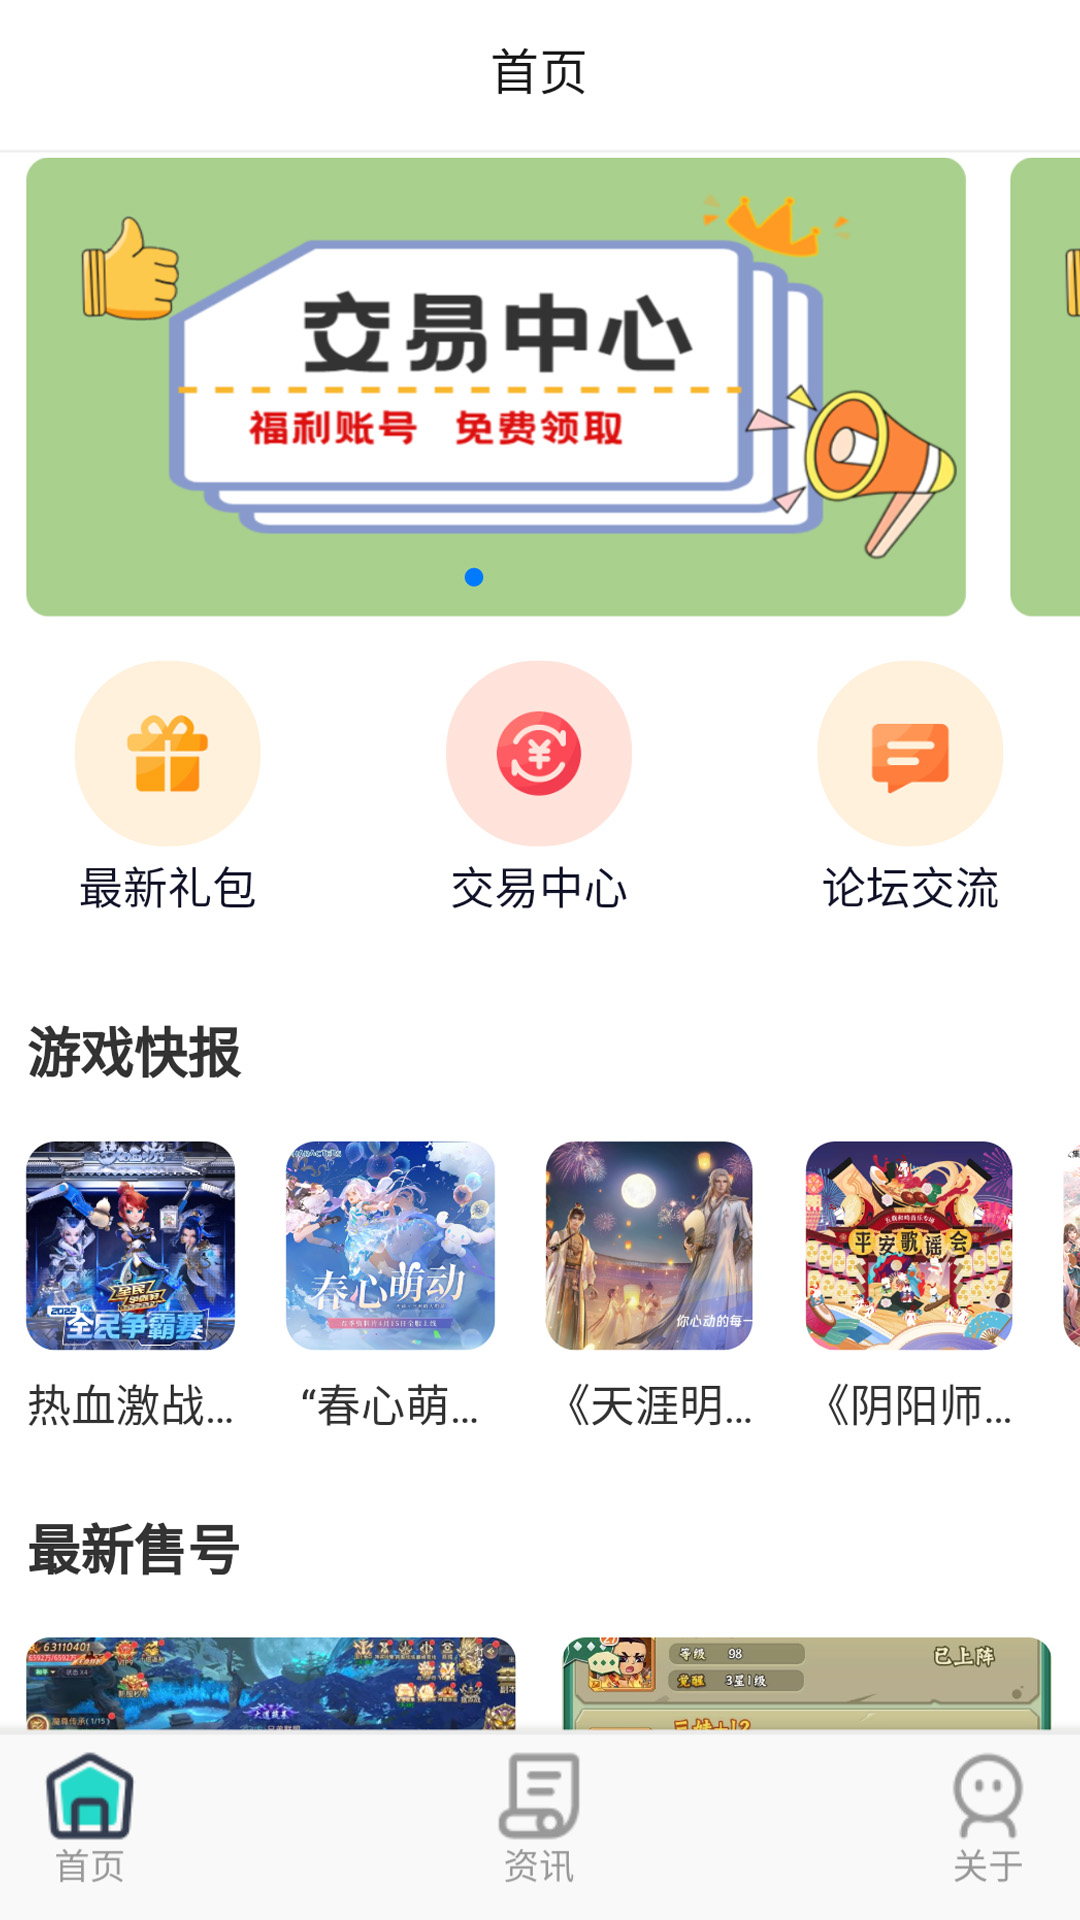 巴兔手游app下载-巴兔手游平台官方版v1.0.0 官方版